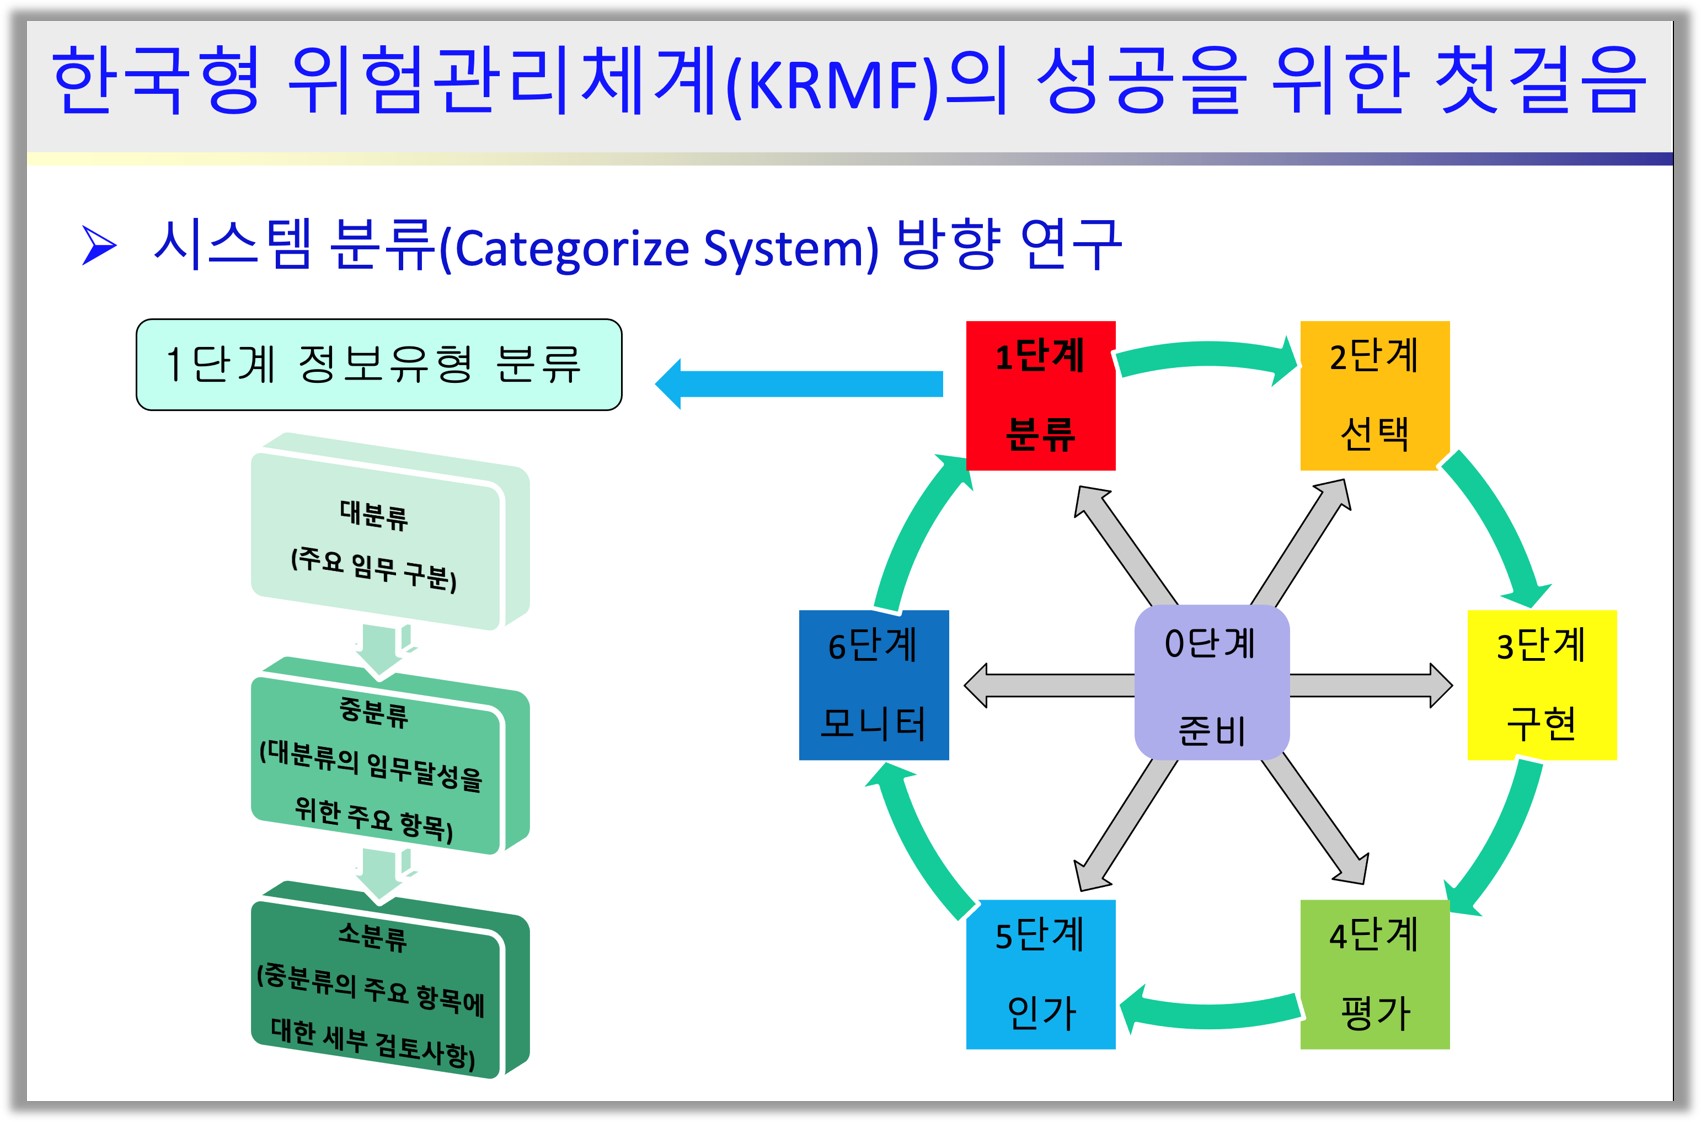 Korean risk management framework (KRMF)